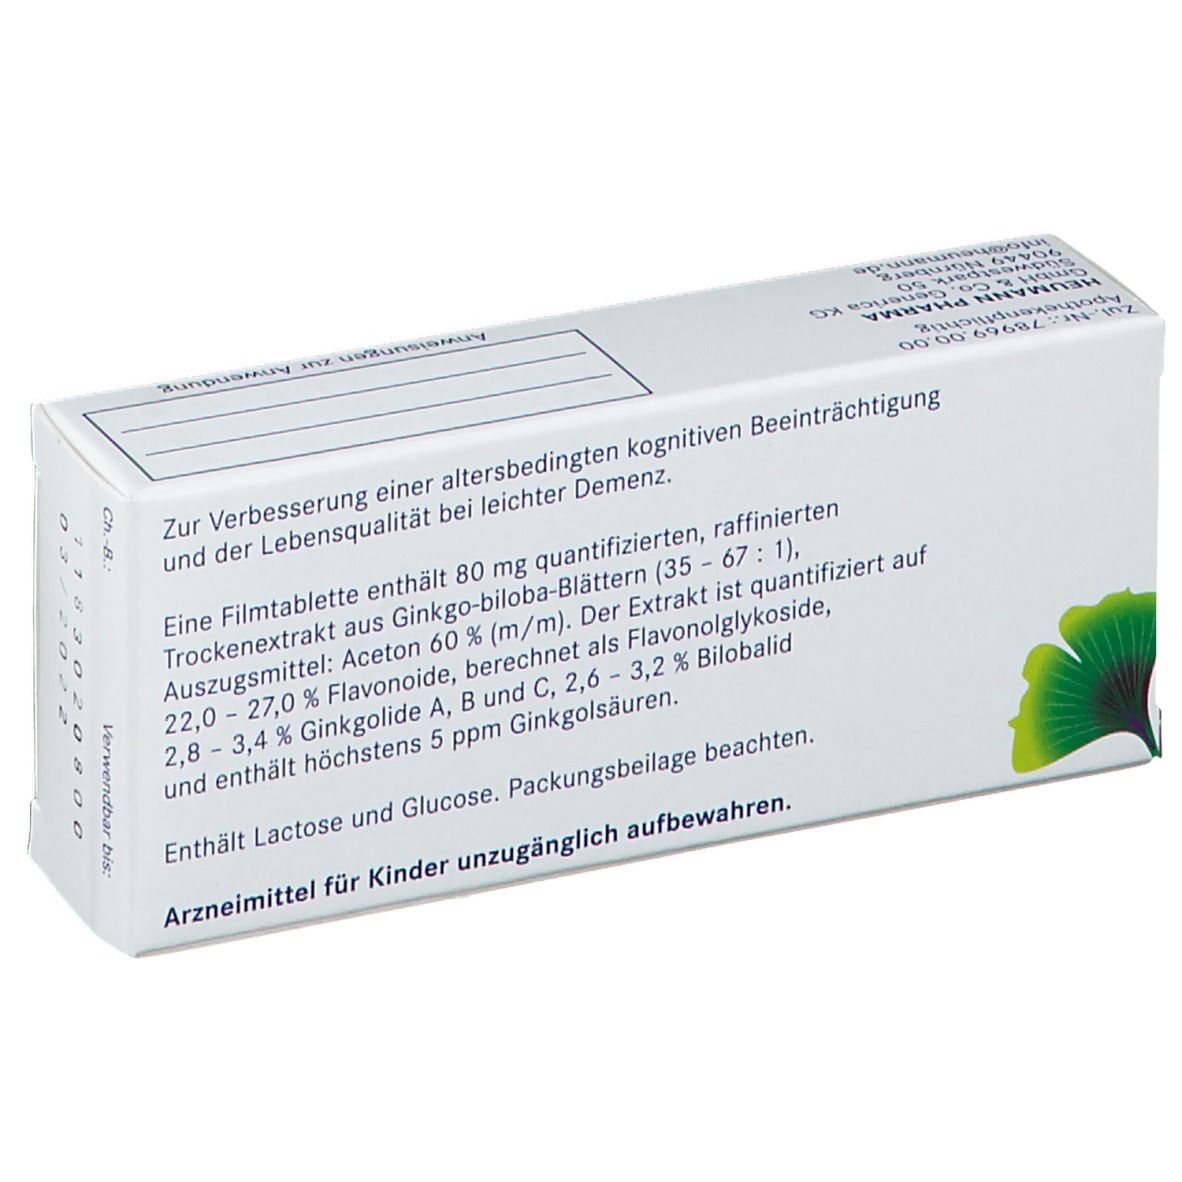 GINKGOVITAL® Heumann 80 mg